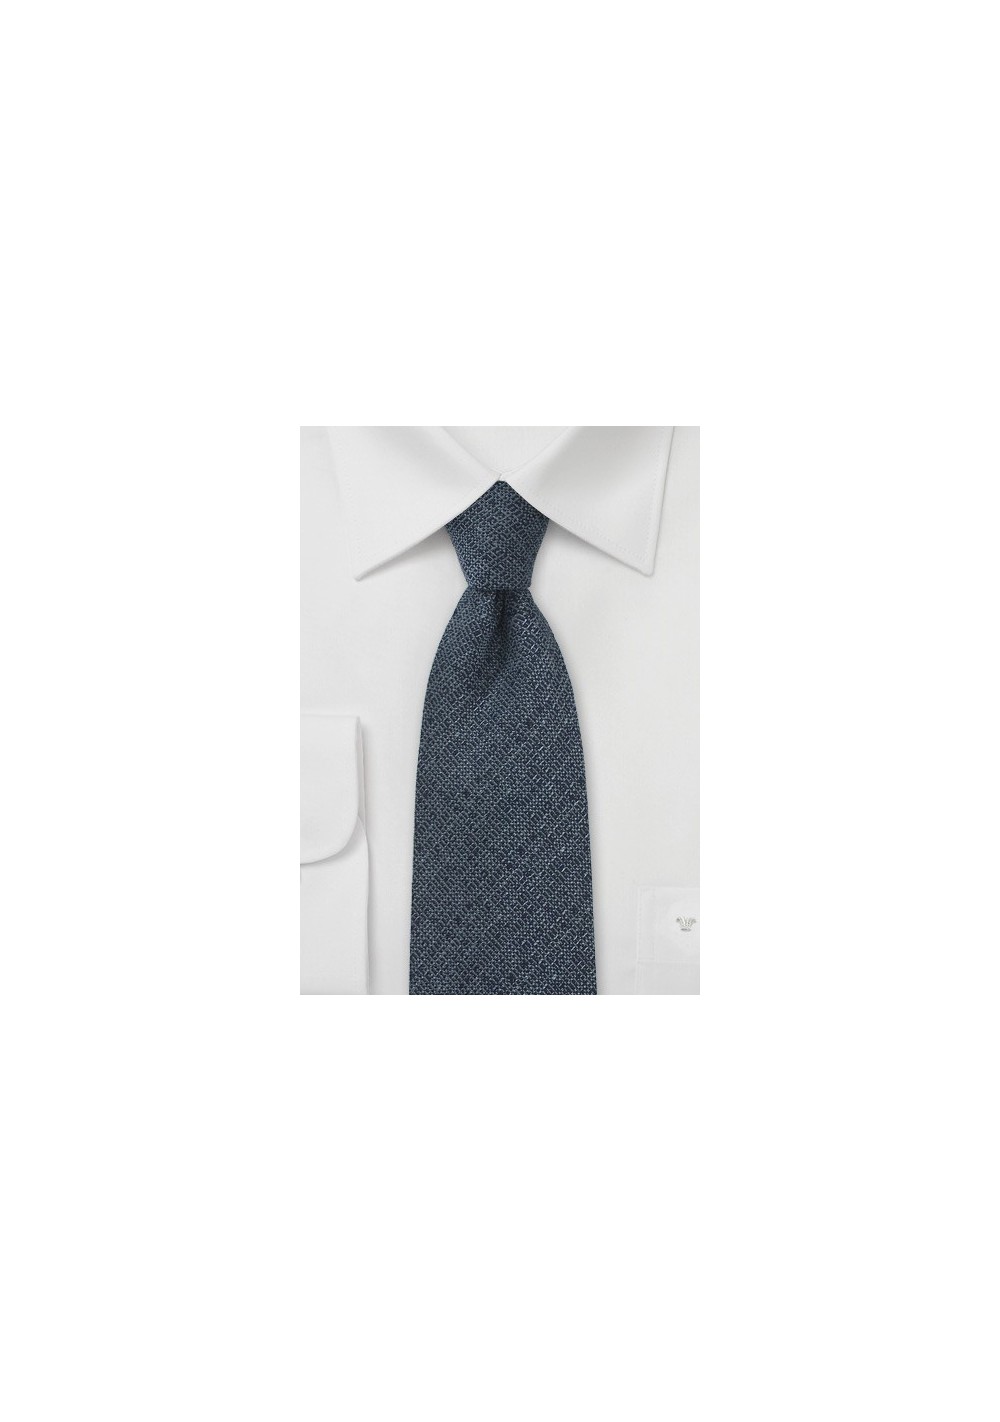 Midnight Blue Wool Necktie with Barleycorn Textured Weave